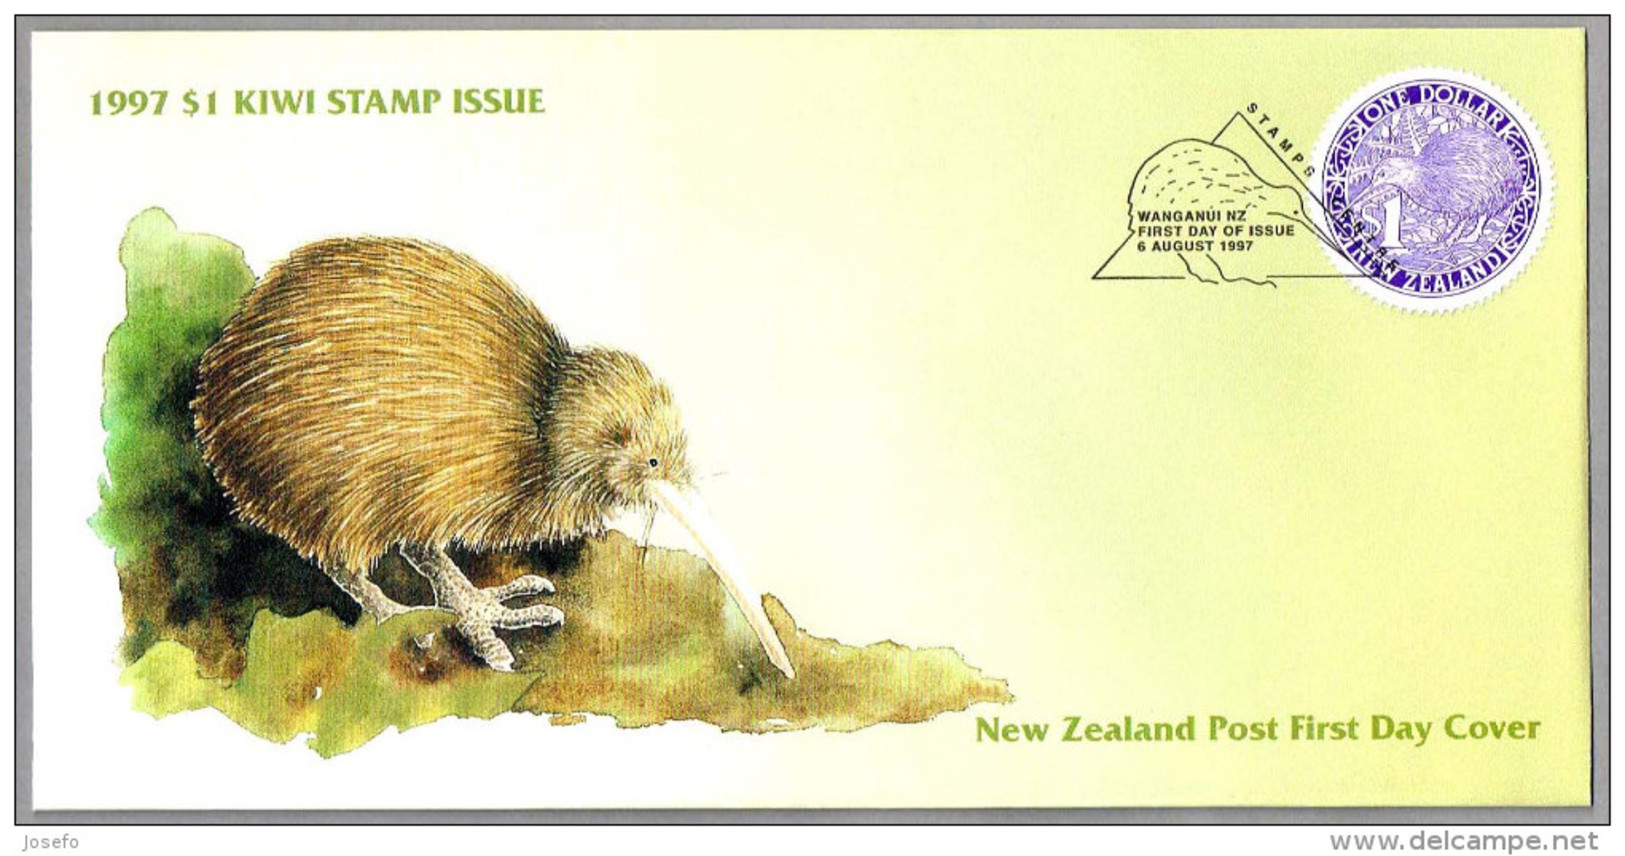 1997 $ 1 KIWI STAMP ISSUE. SPD/FDC Wanganui NZ 1997 - Kiwi